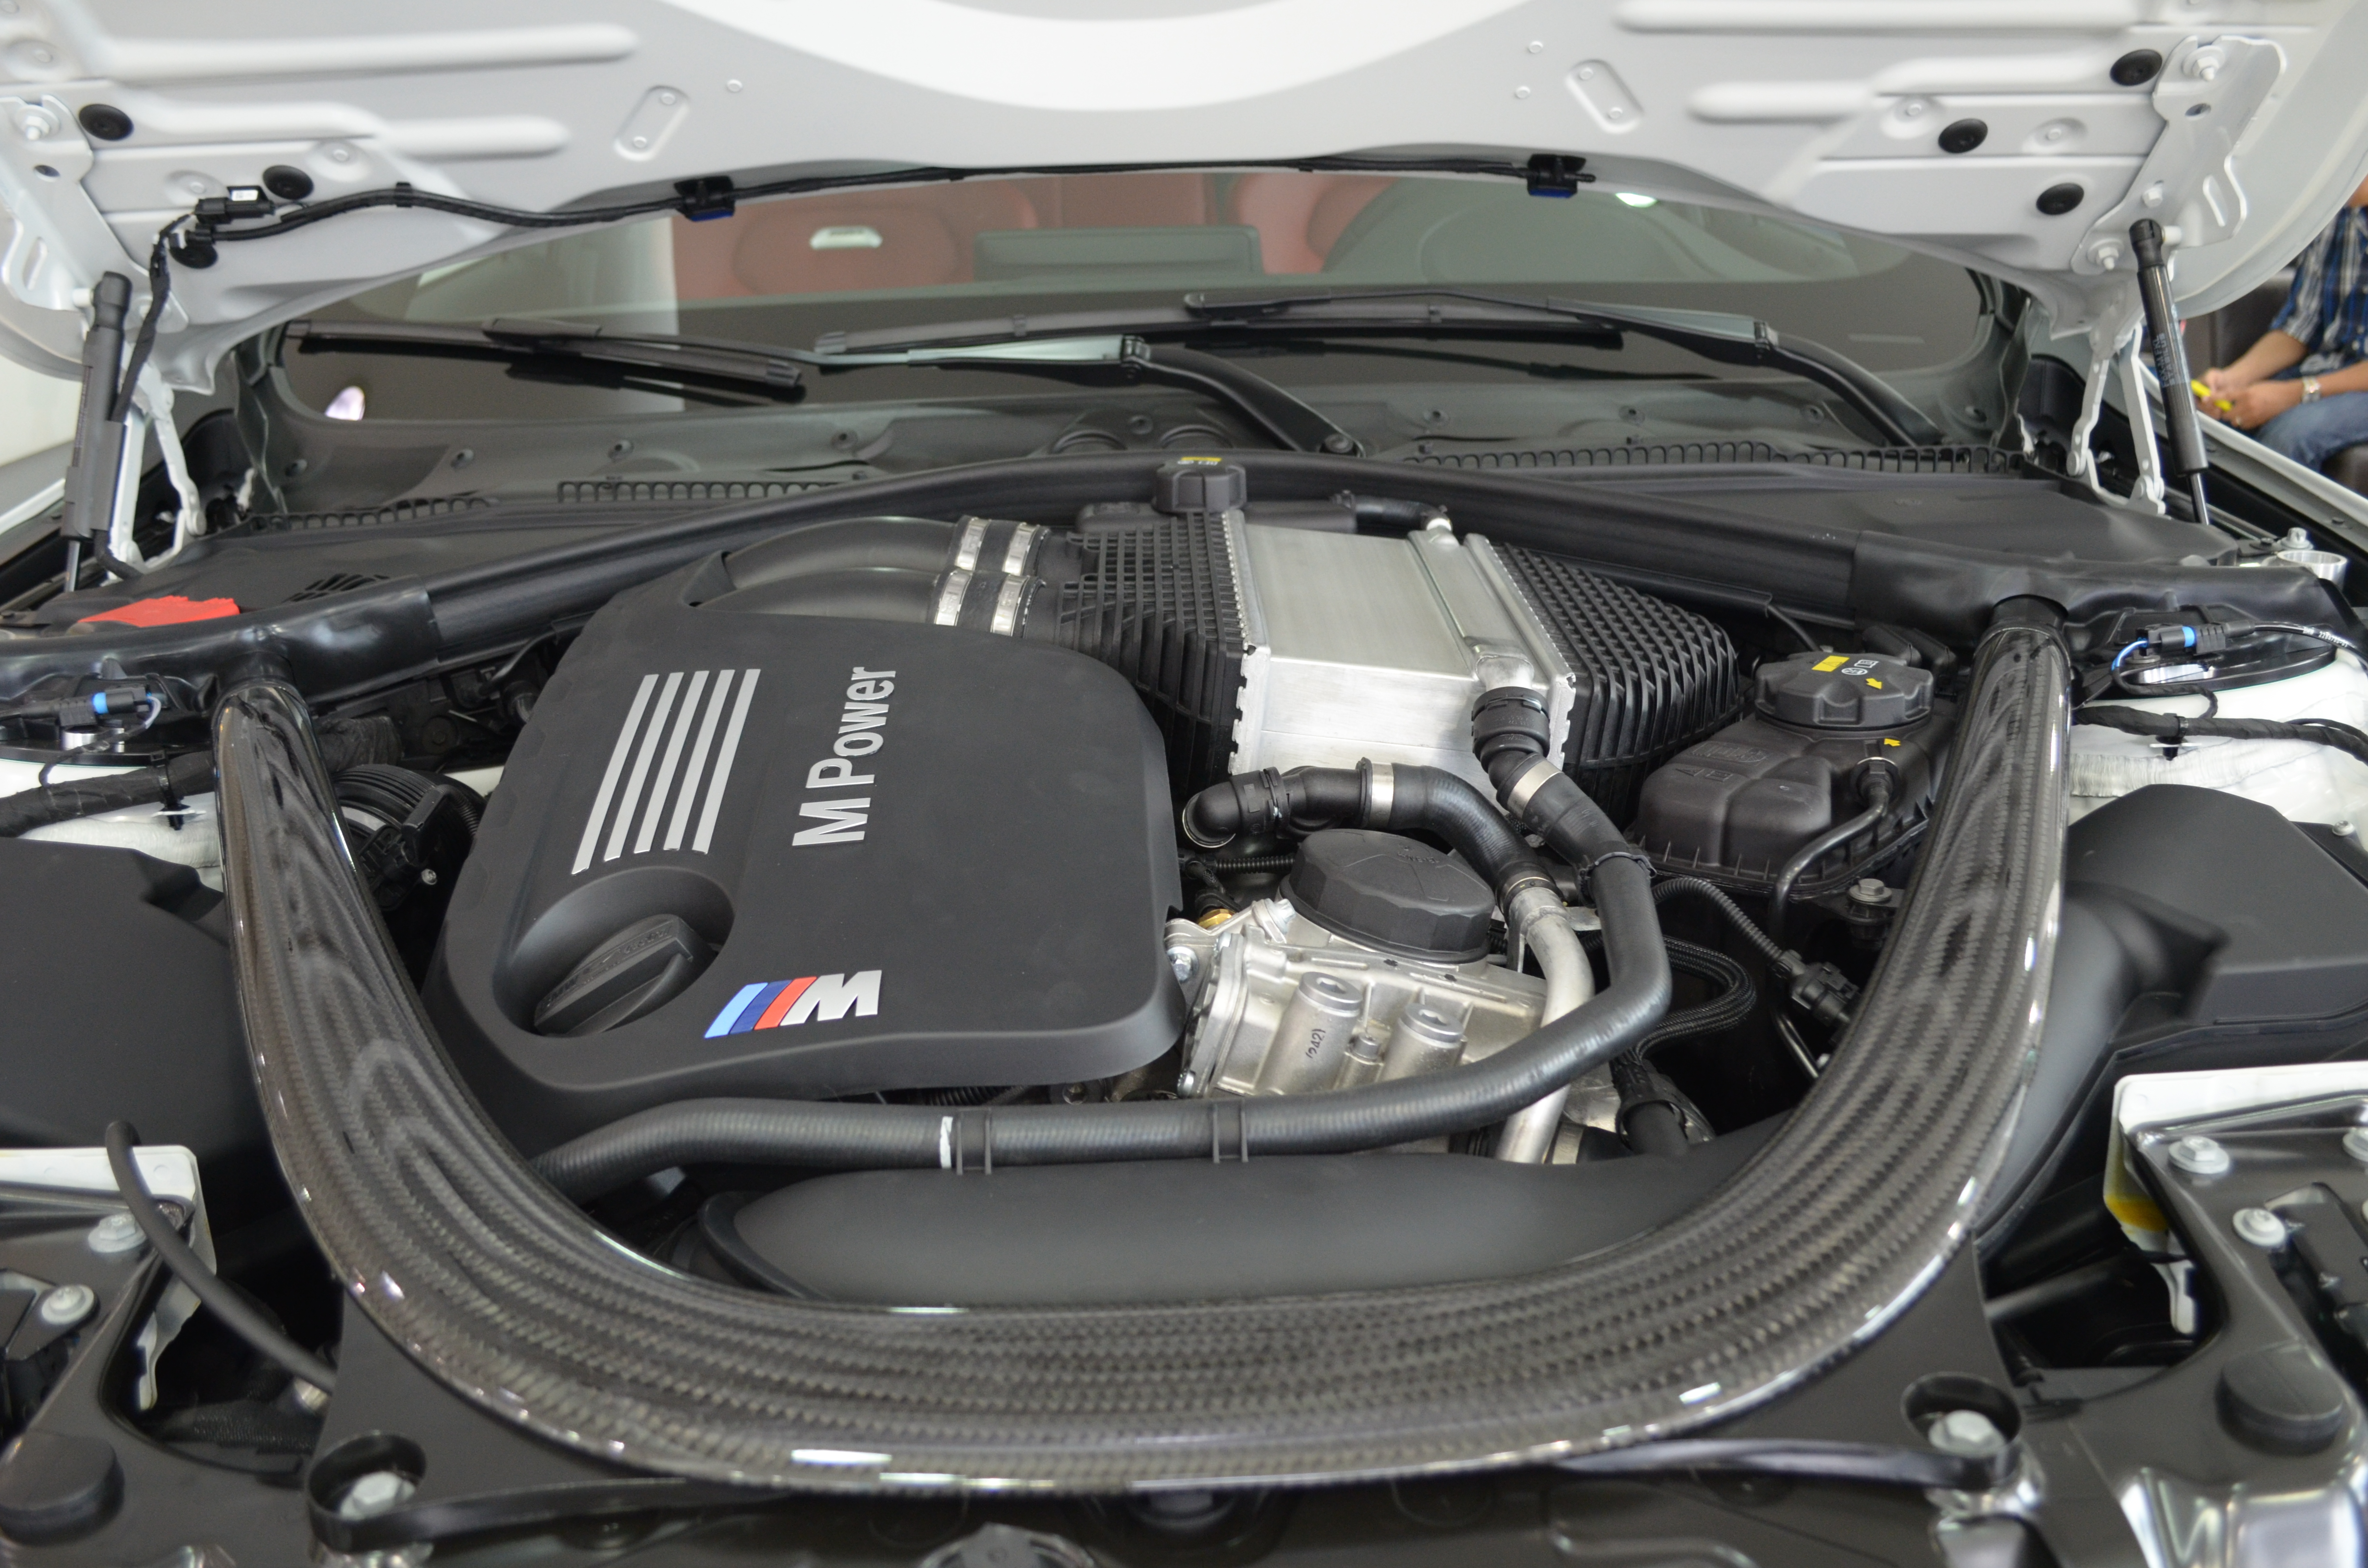 BMW M3 sedan ra mắt tại Việt Nam với giá 3,79 tỷ đồng